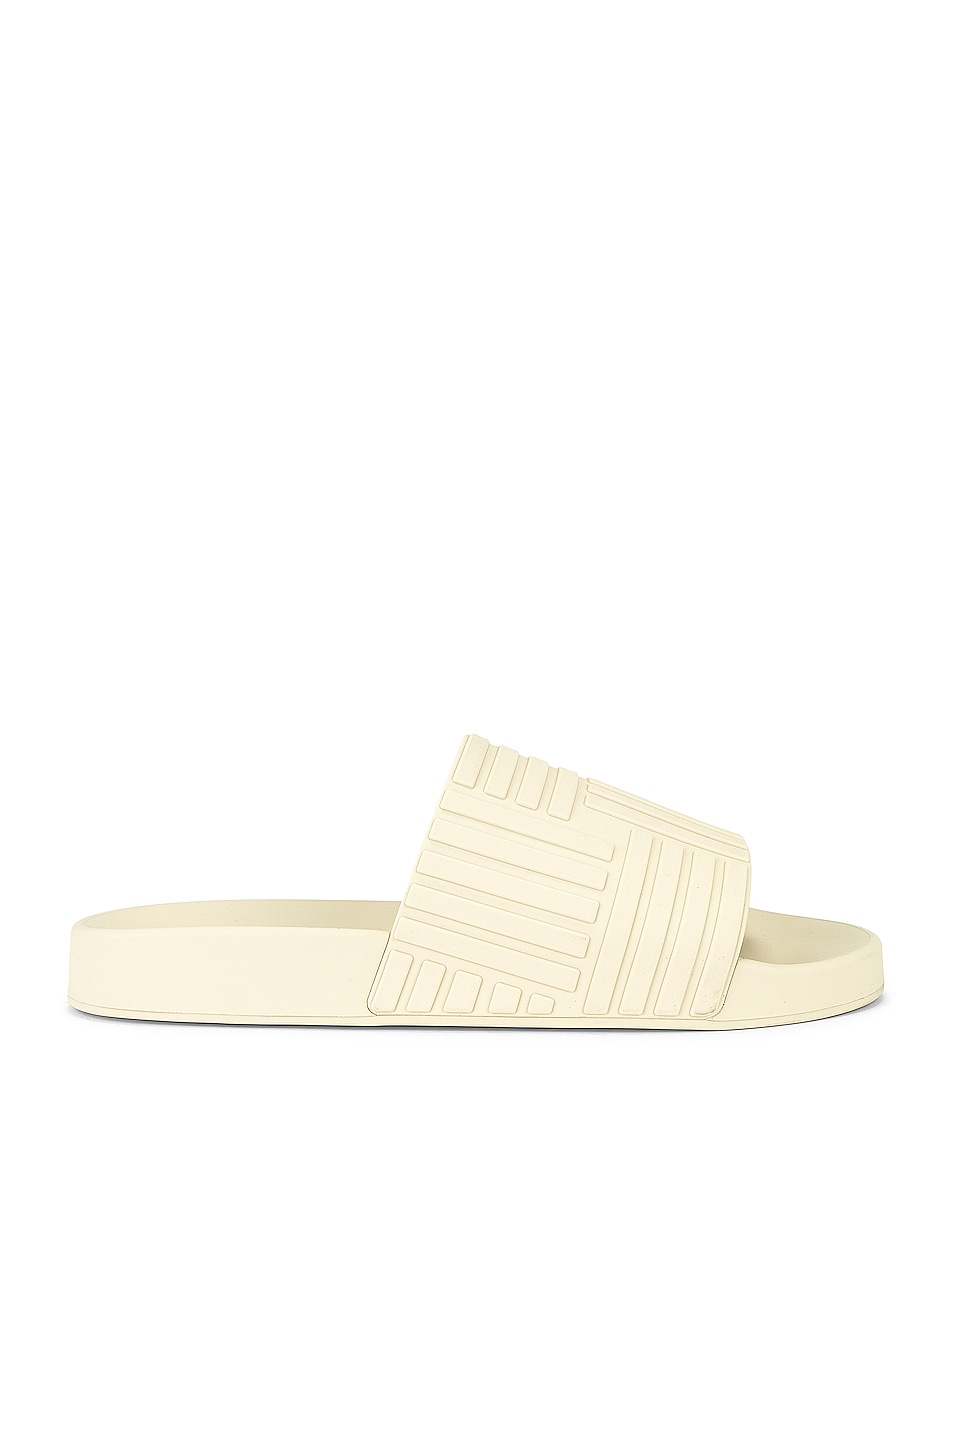 The Slider Sandal in Cream